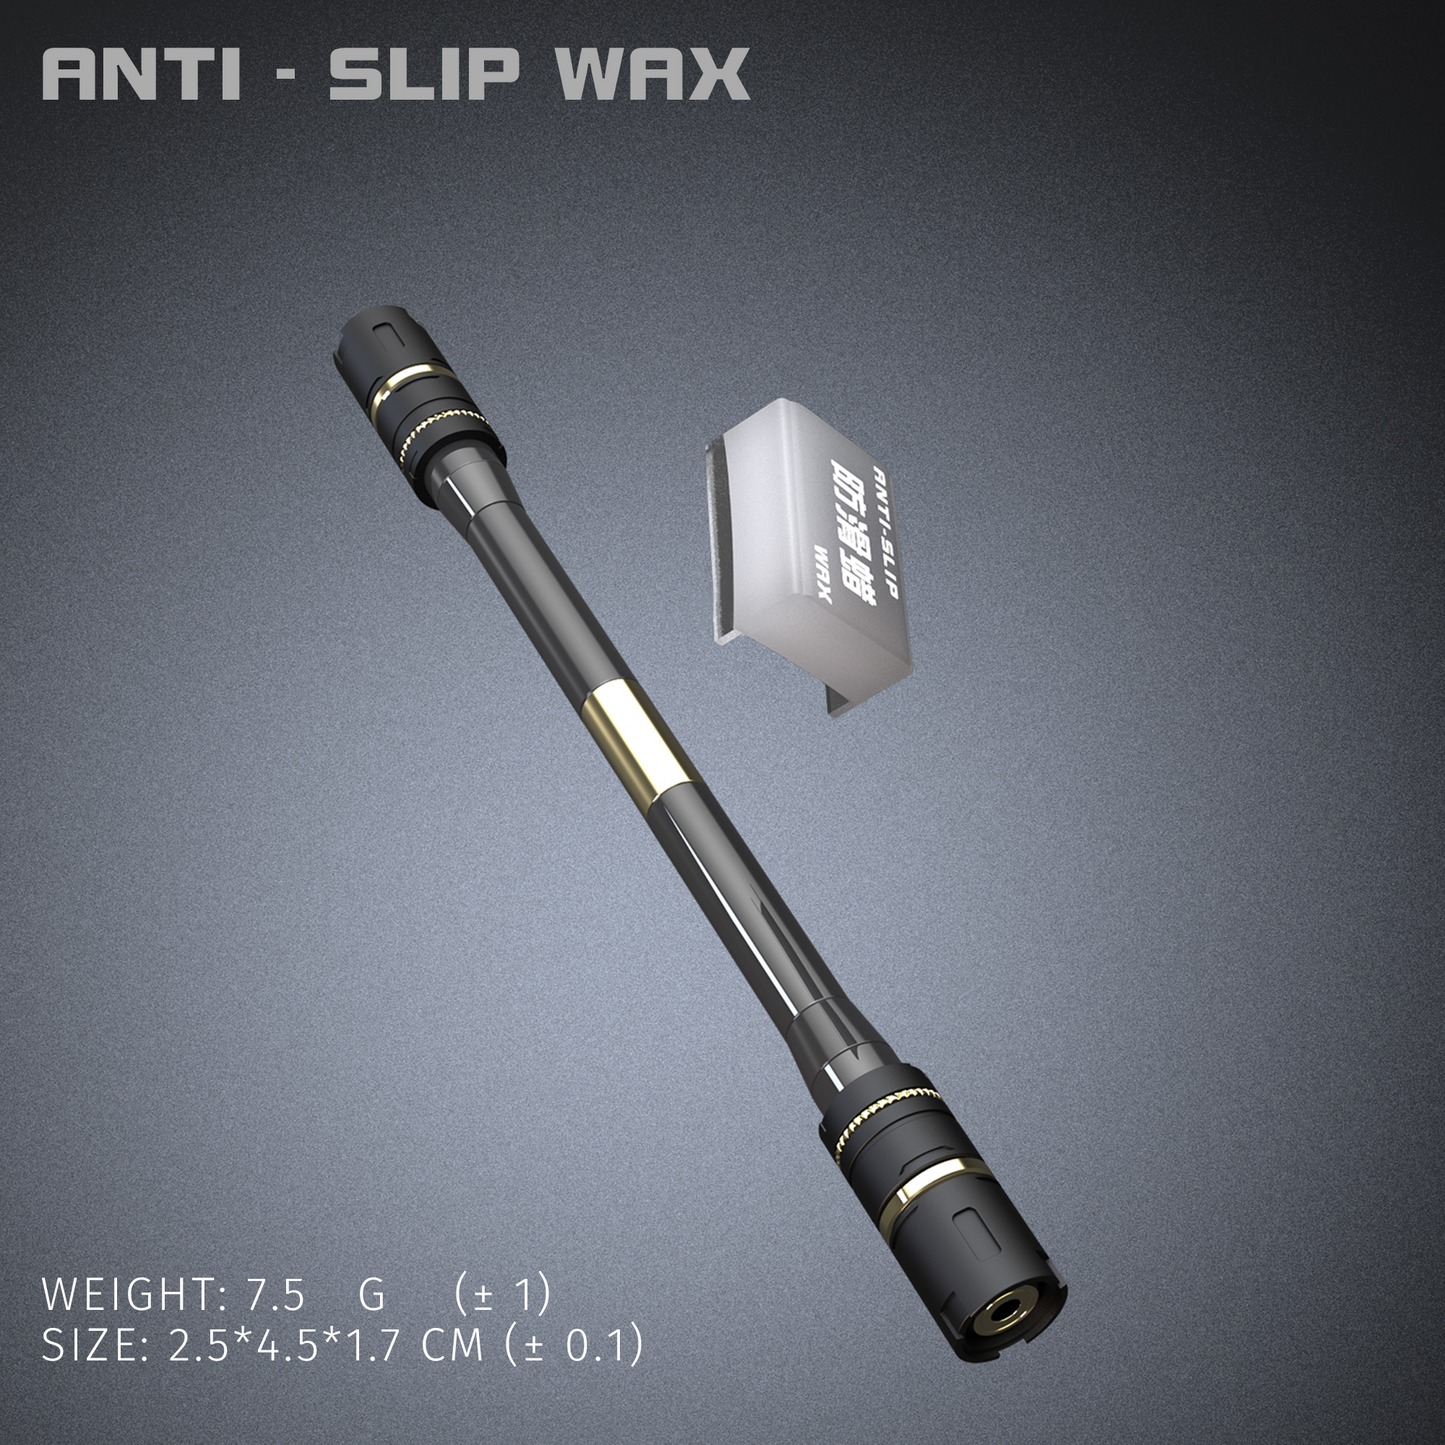 ANTI-SLIP WAX